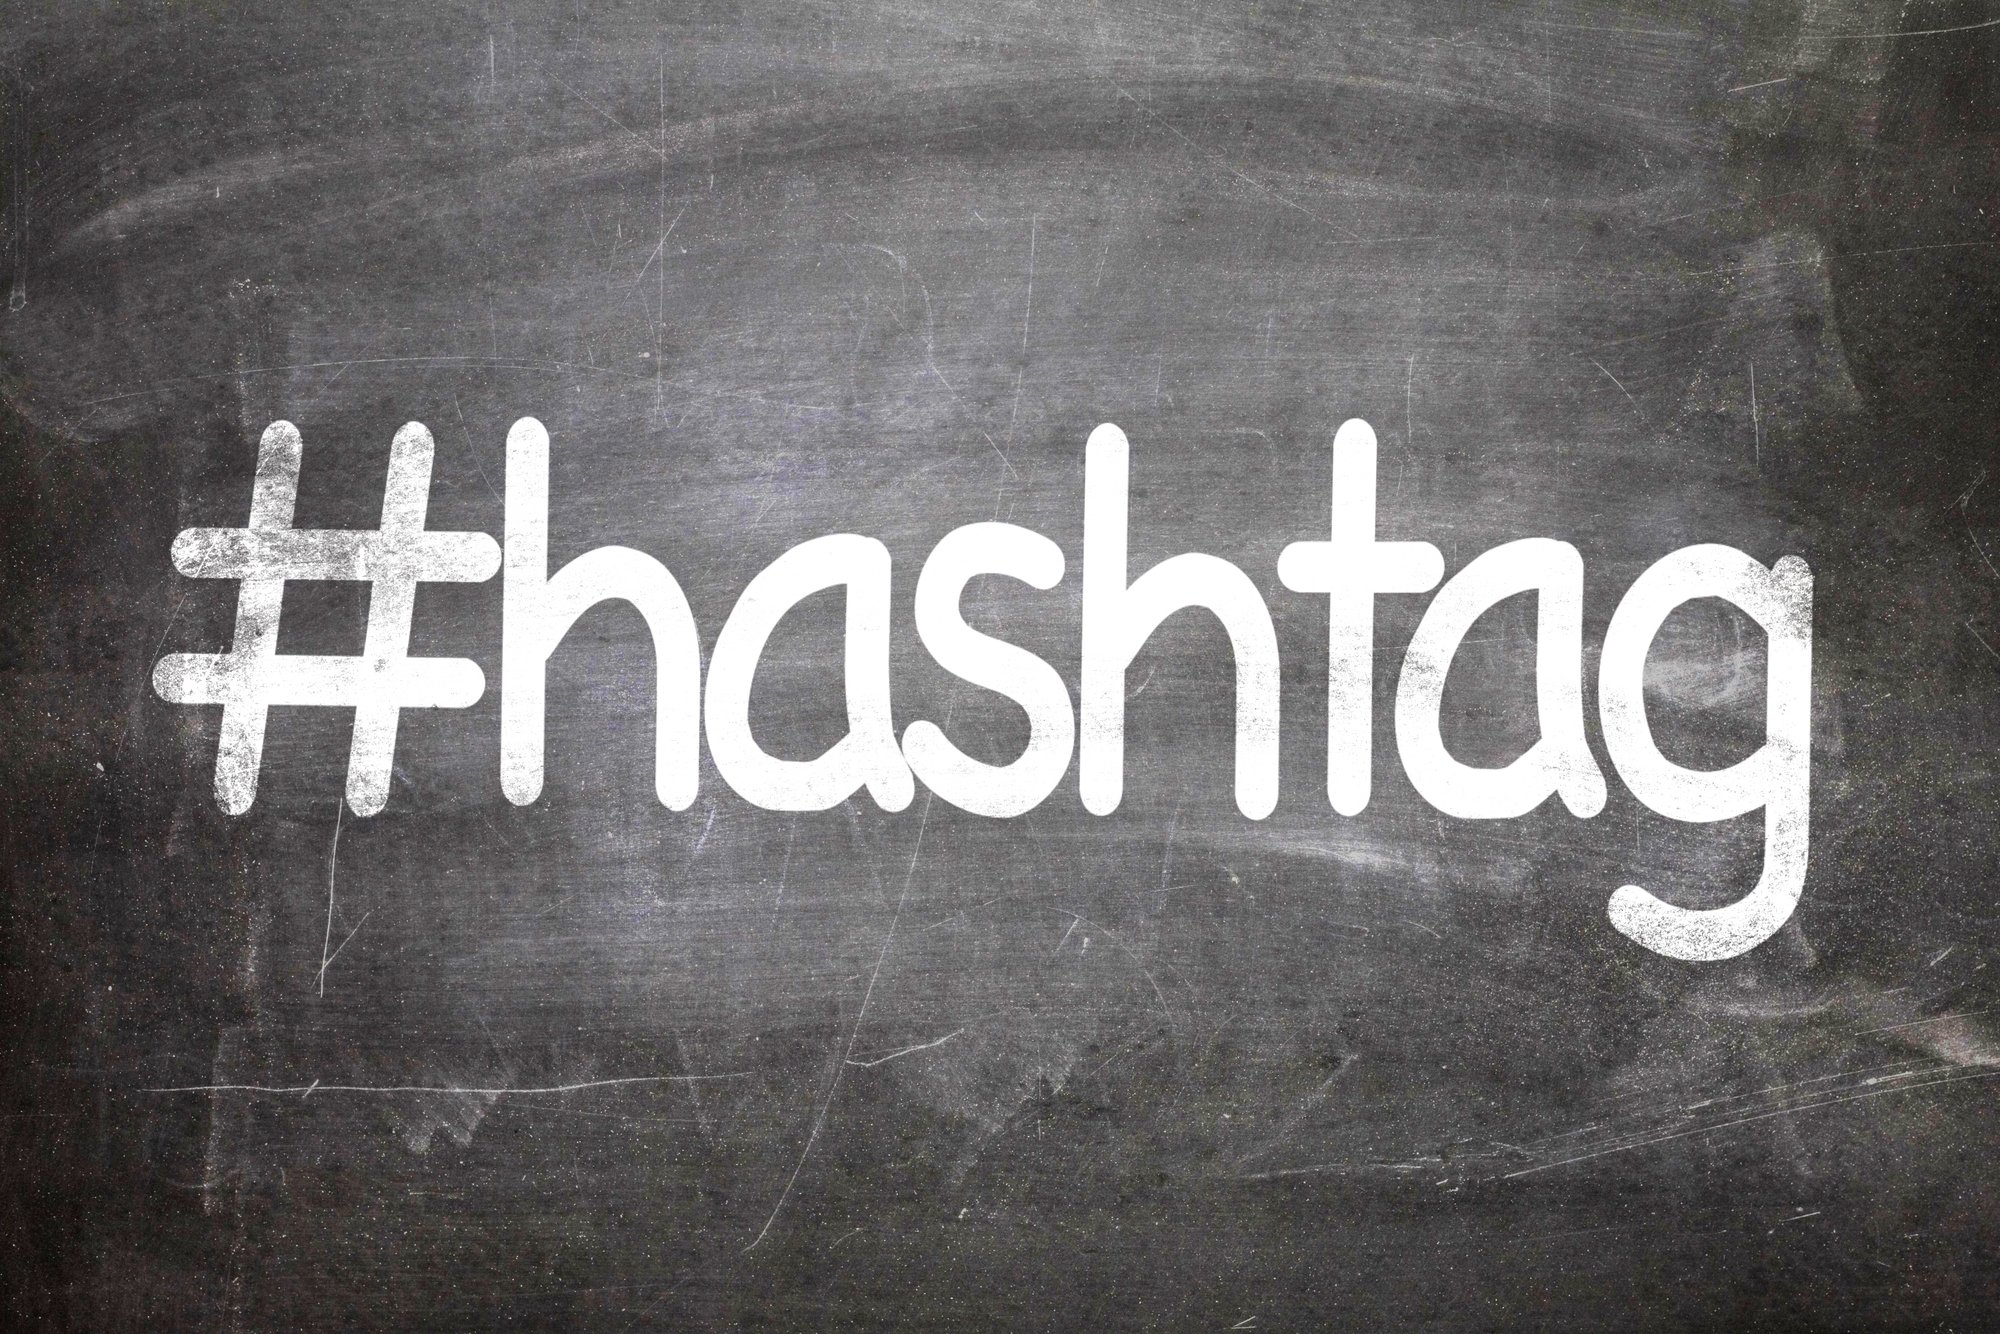 Symbol hashtag on a chalkboard